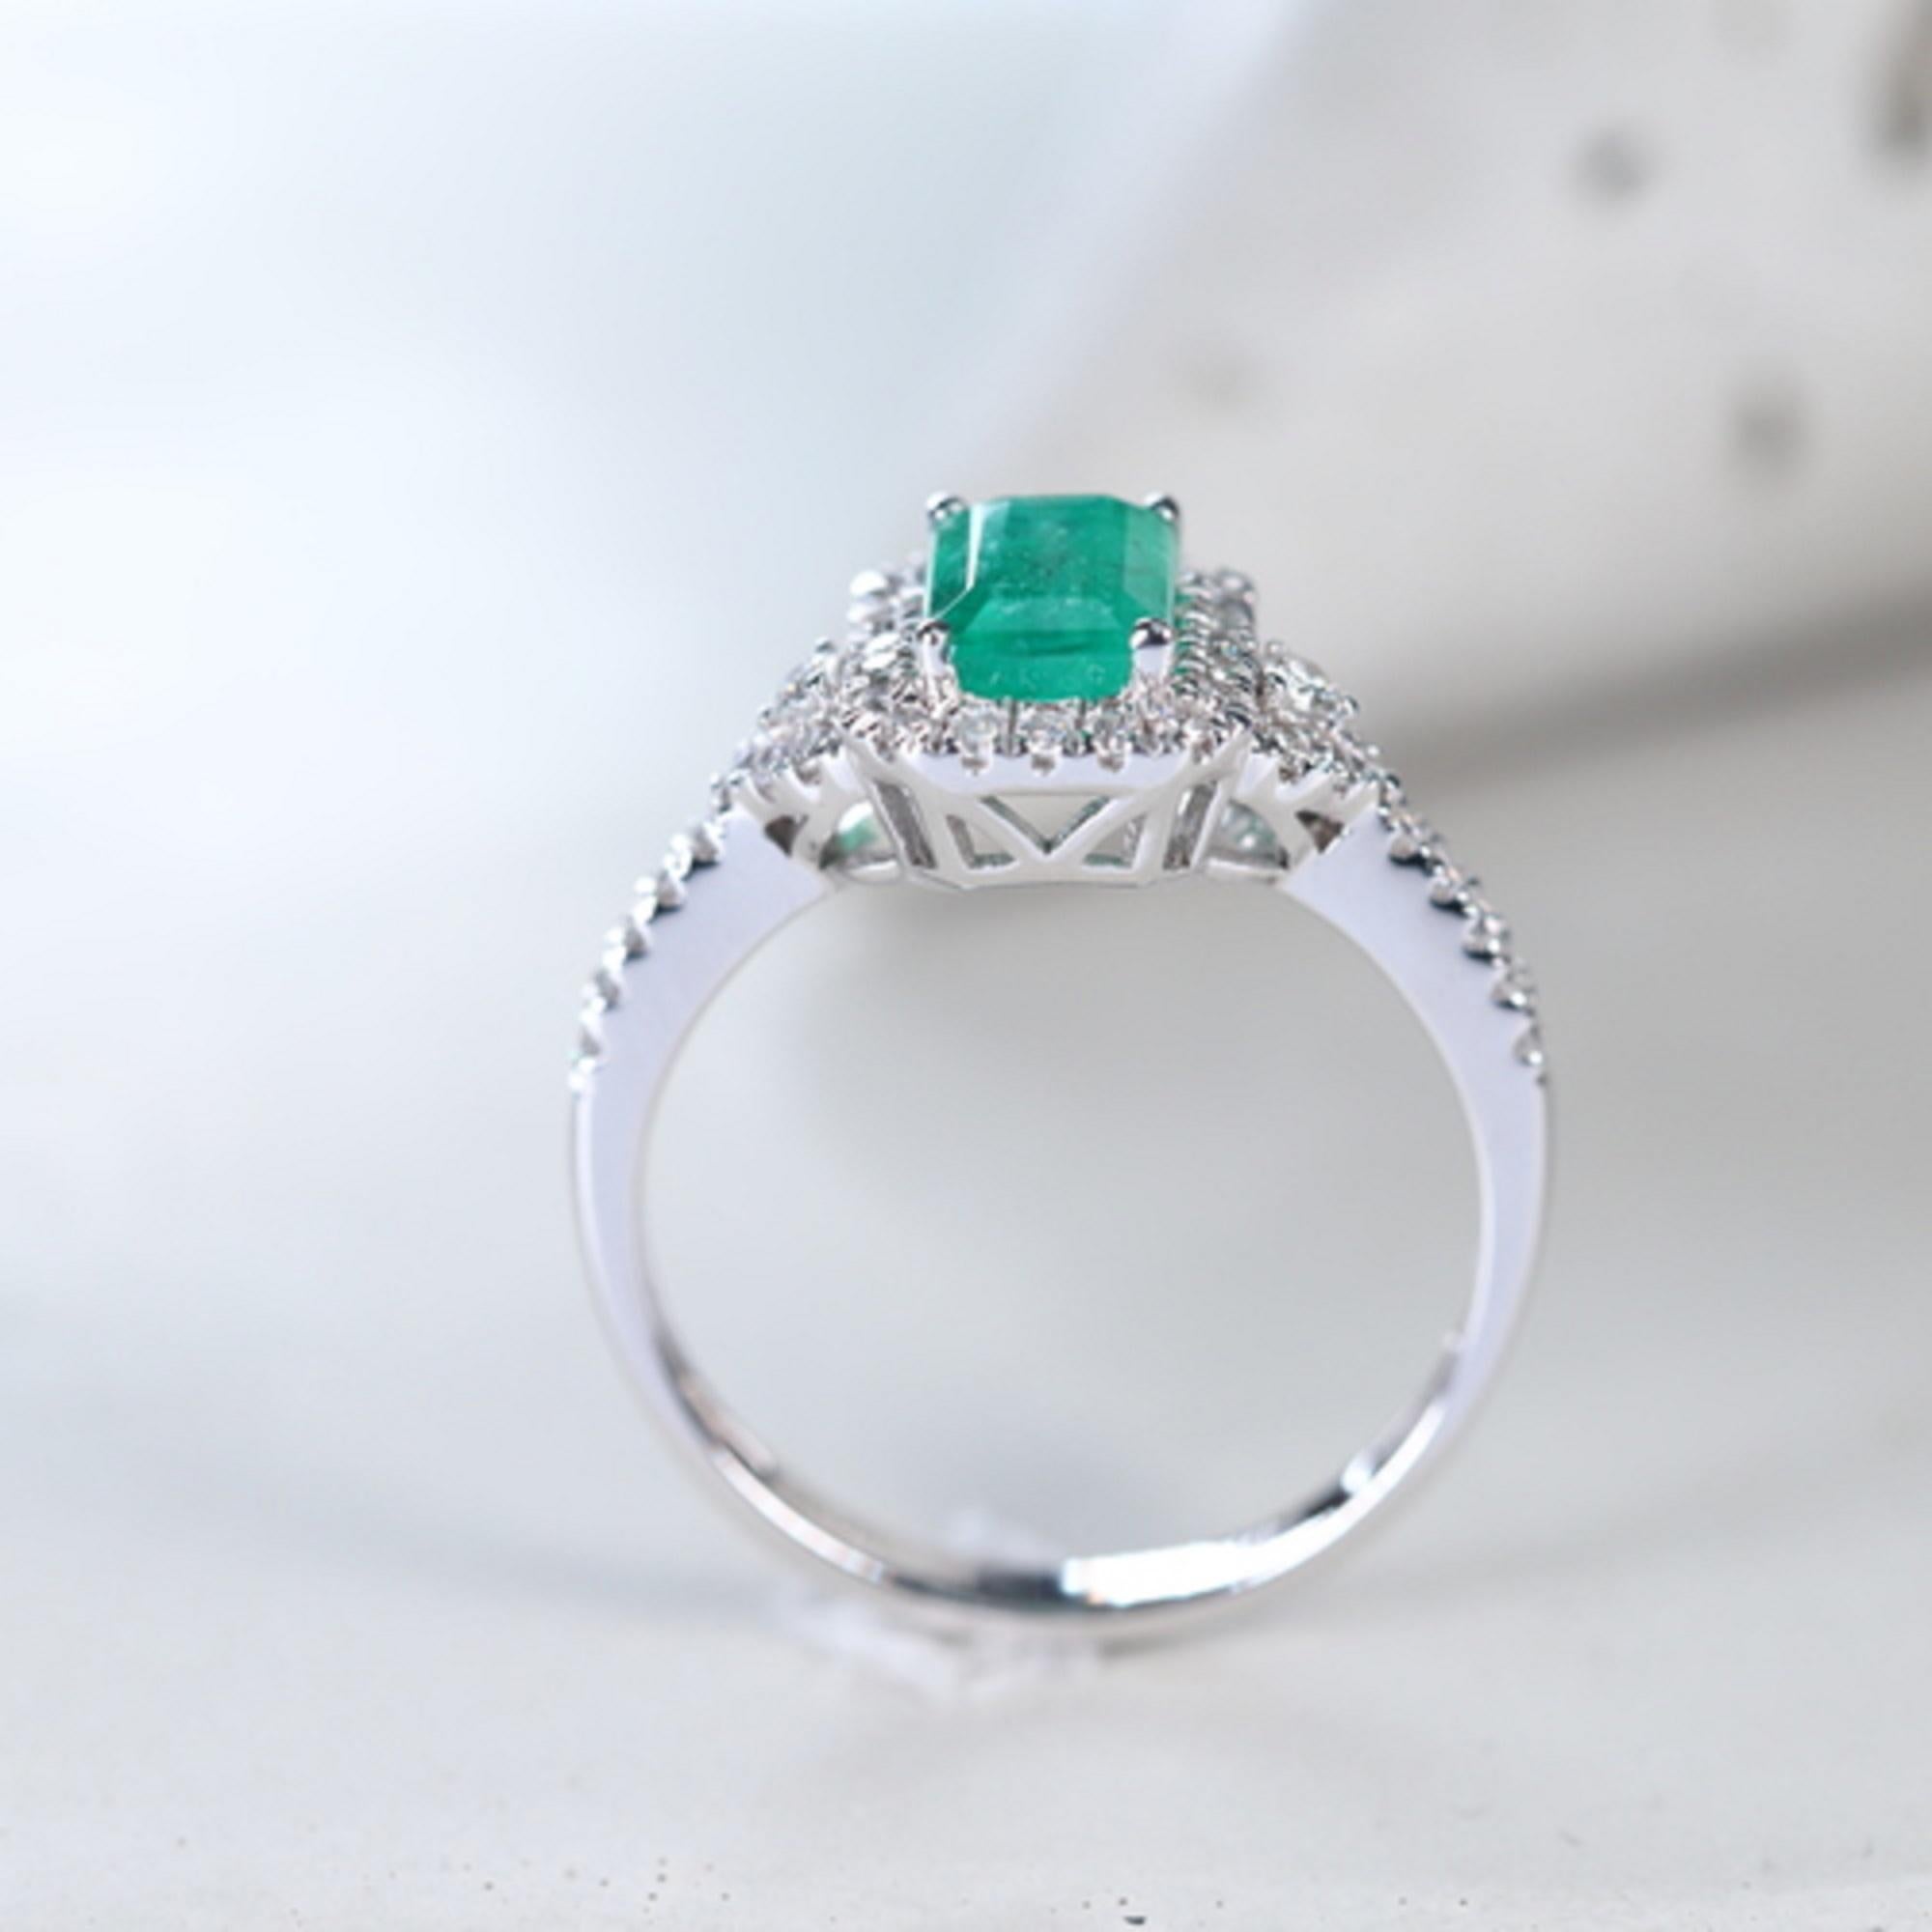 Emerald Cut Classic Emerald-Cut Emerald and Round Cut White Diamond 14K White Gold Ring